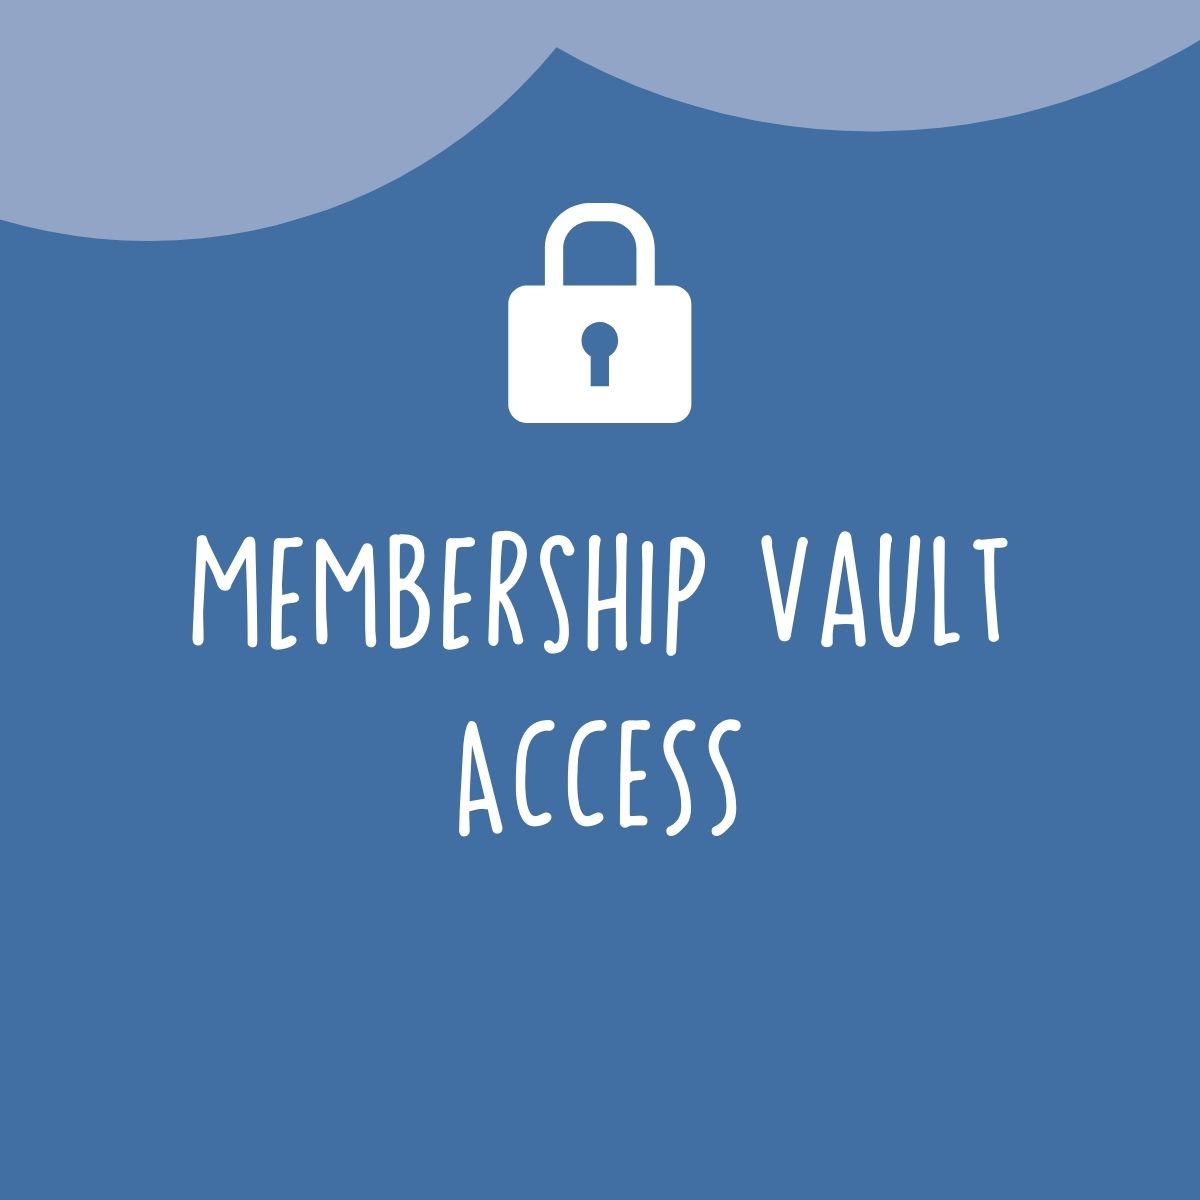 Membership Vault Access